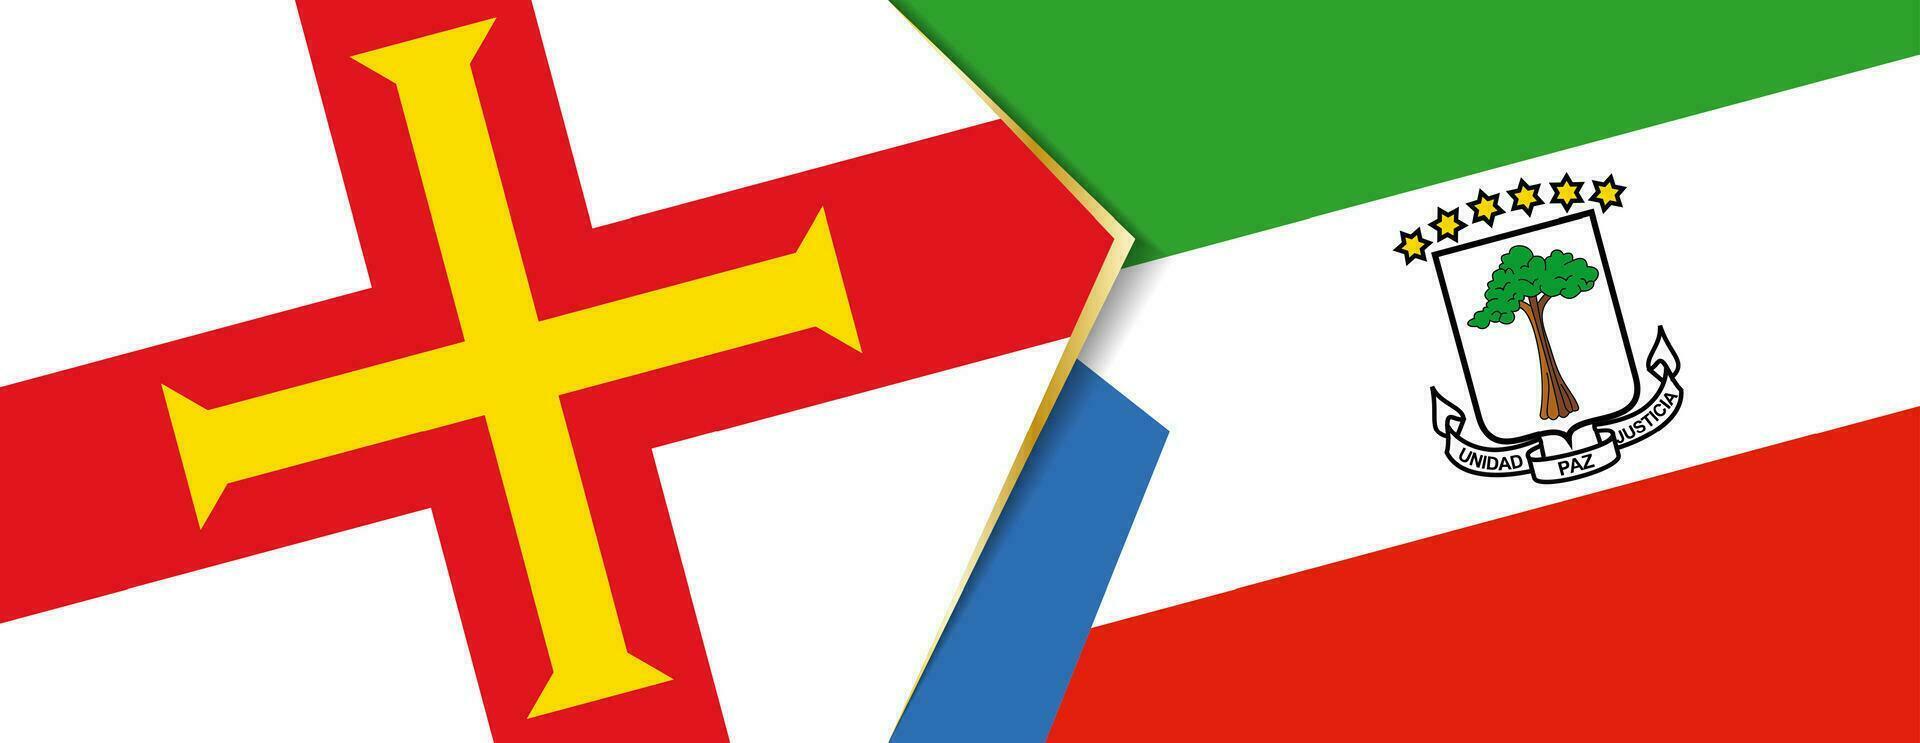 maglione e equatoriale Guinea bandiere, Due vettore bandiere.